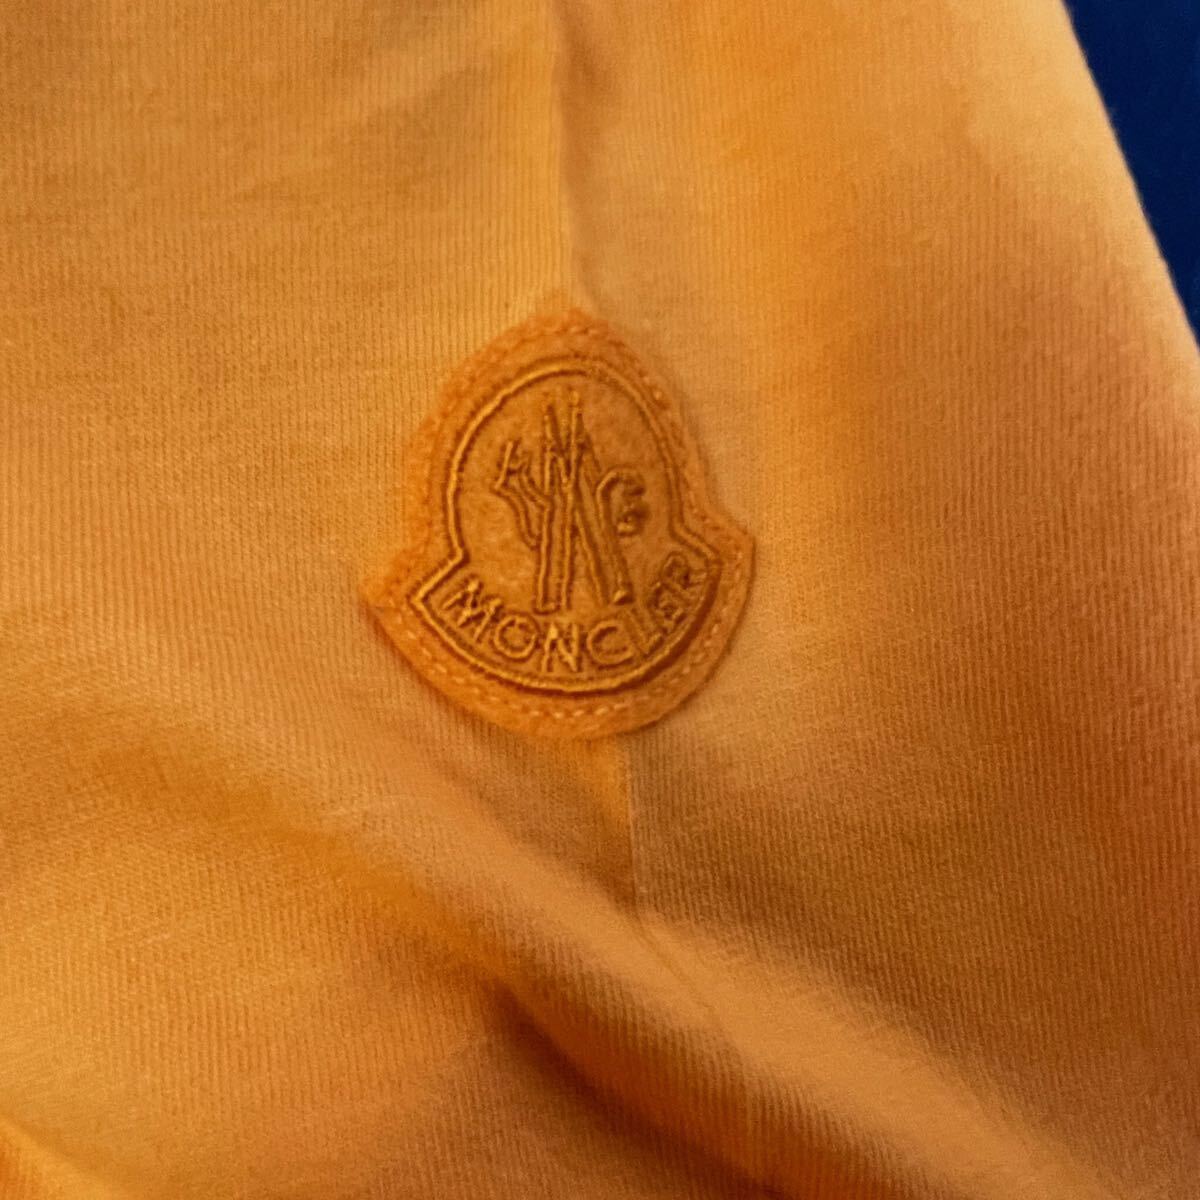 新入荷 本物 新品 40561205 MONCLER モンクレール/ジーニアス/1952/サイズL 大人気 限定高級ブランド SAND BOARD 半袖Tシャツ カットソー の画像5